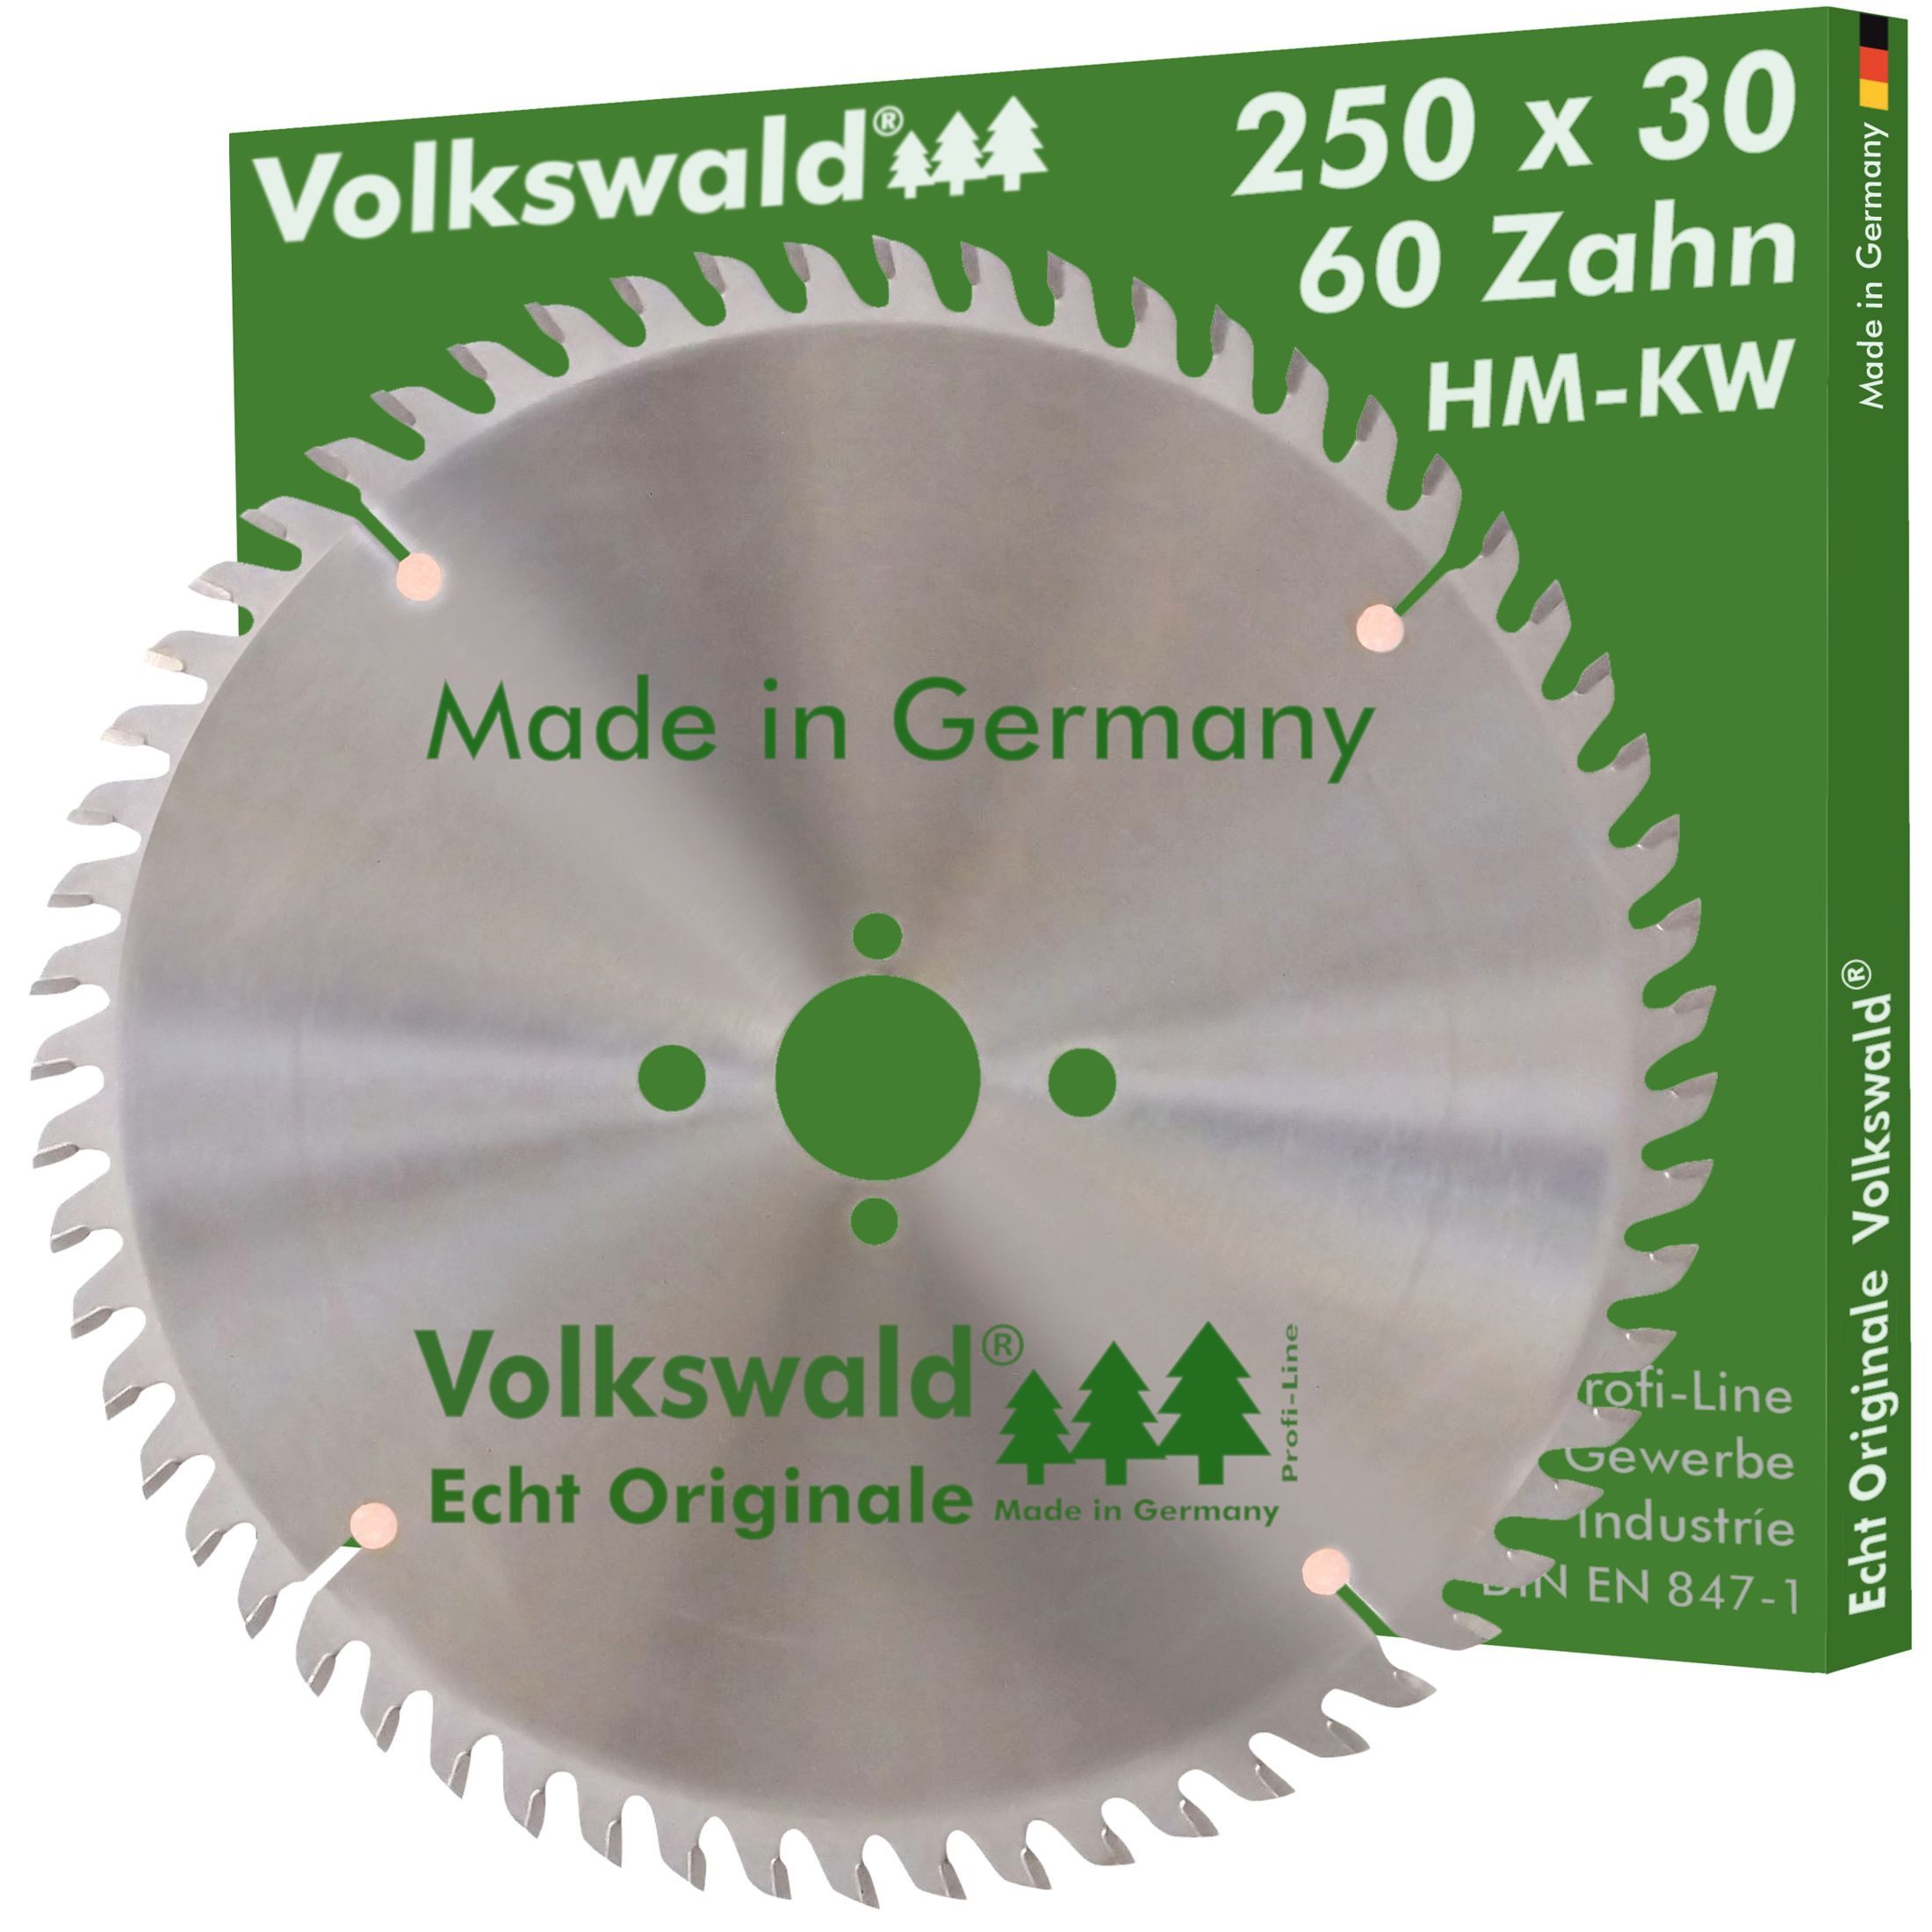 Volkswald Kreissägeblatt Volkswald ® HM-Sägeblatt KW 250 x 30 mm Z=60 Massivholz Kreissägeblatt, Echt Originale Volkswald® Made in Germany